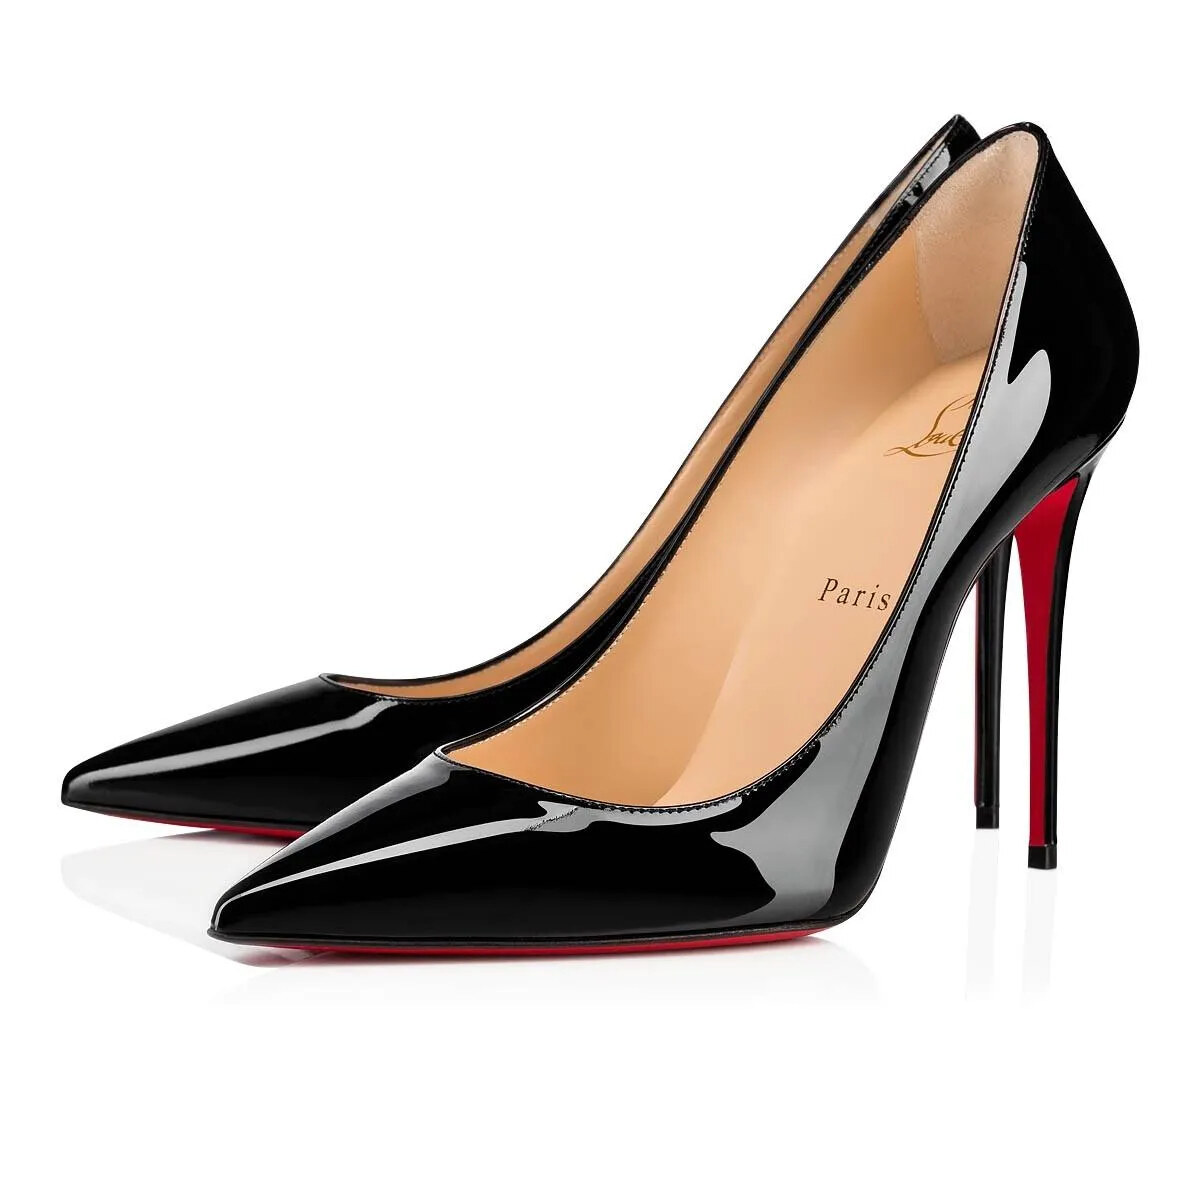 【Świętujemy 30-lecie czerwonej pięty AR! 】 Czerwone buty CL Kate ze skóry lakierowanej - 90% taniej.